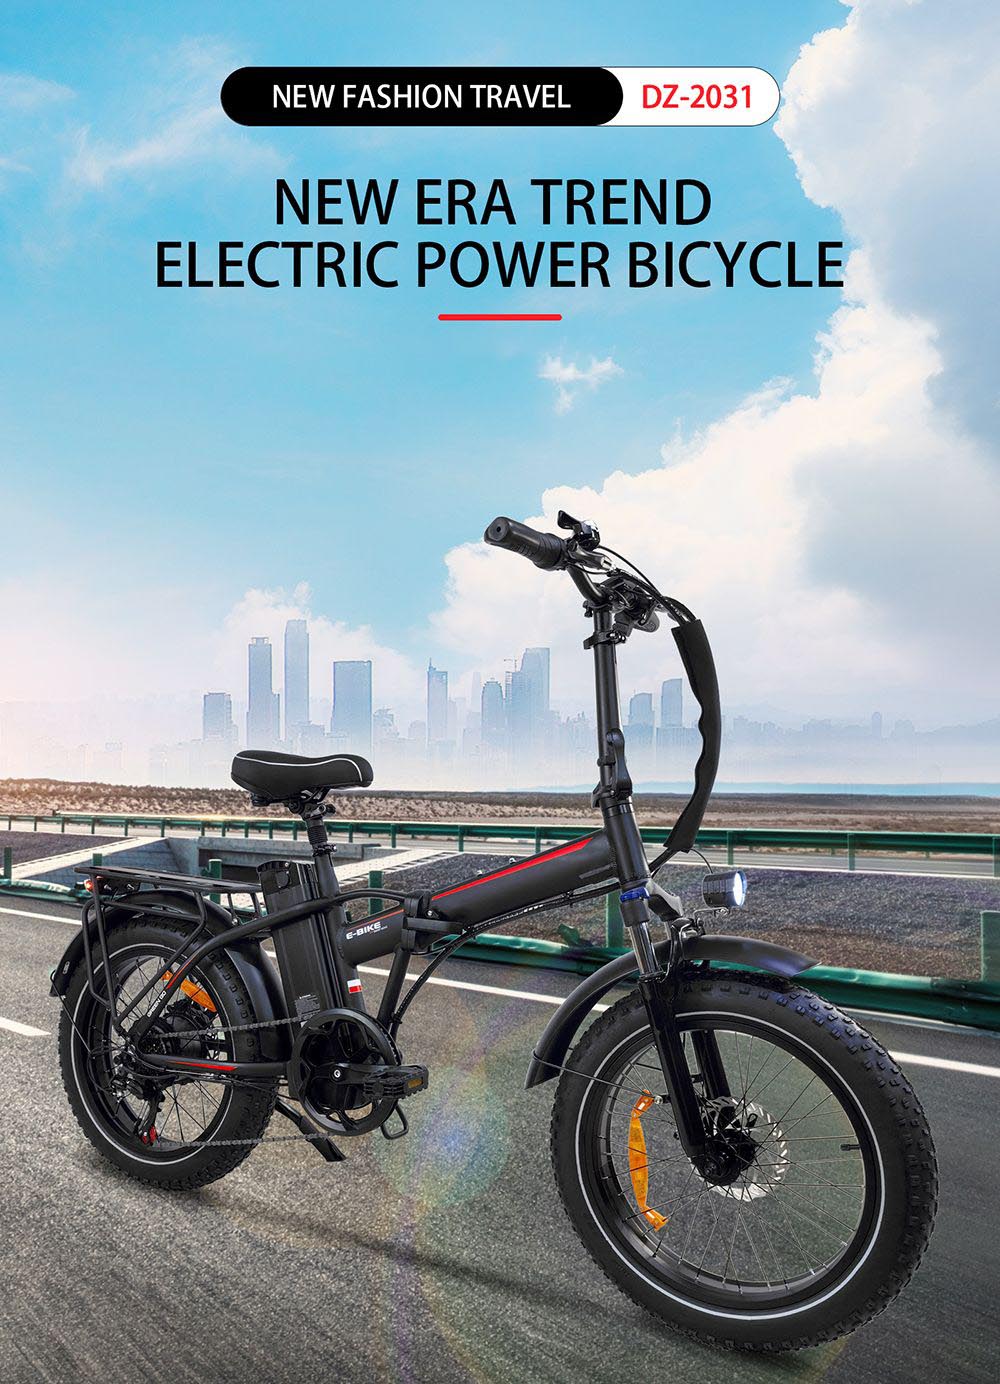 BAOLUJIE DZ2031 elektrische fiets, 500 W motor 48 V 13 Ah batterij 20 * 4.0 inch band 35-45 km bereik 40 km / u maximale snelheid SHIMANO mechanische schijfrem met 7 versnellingen - zwart